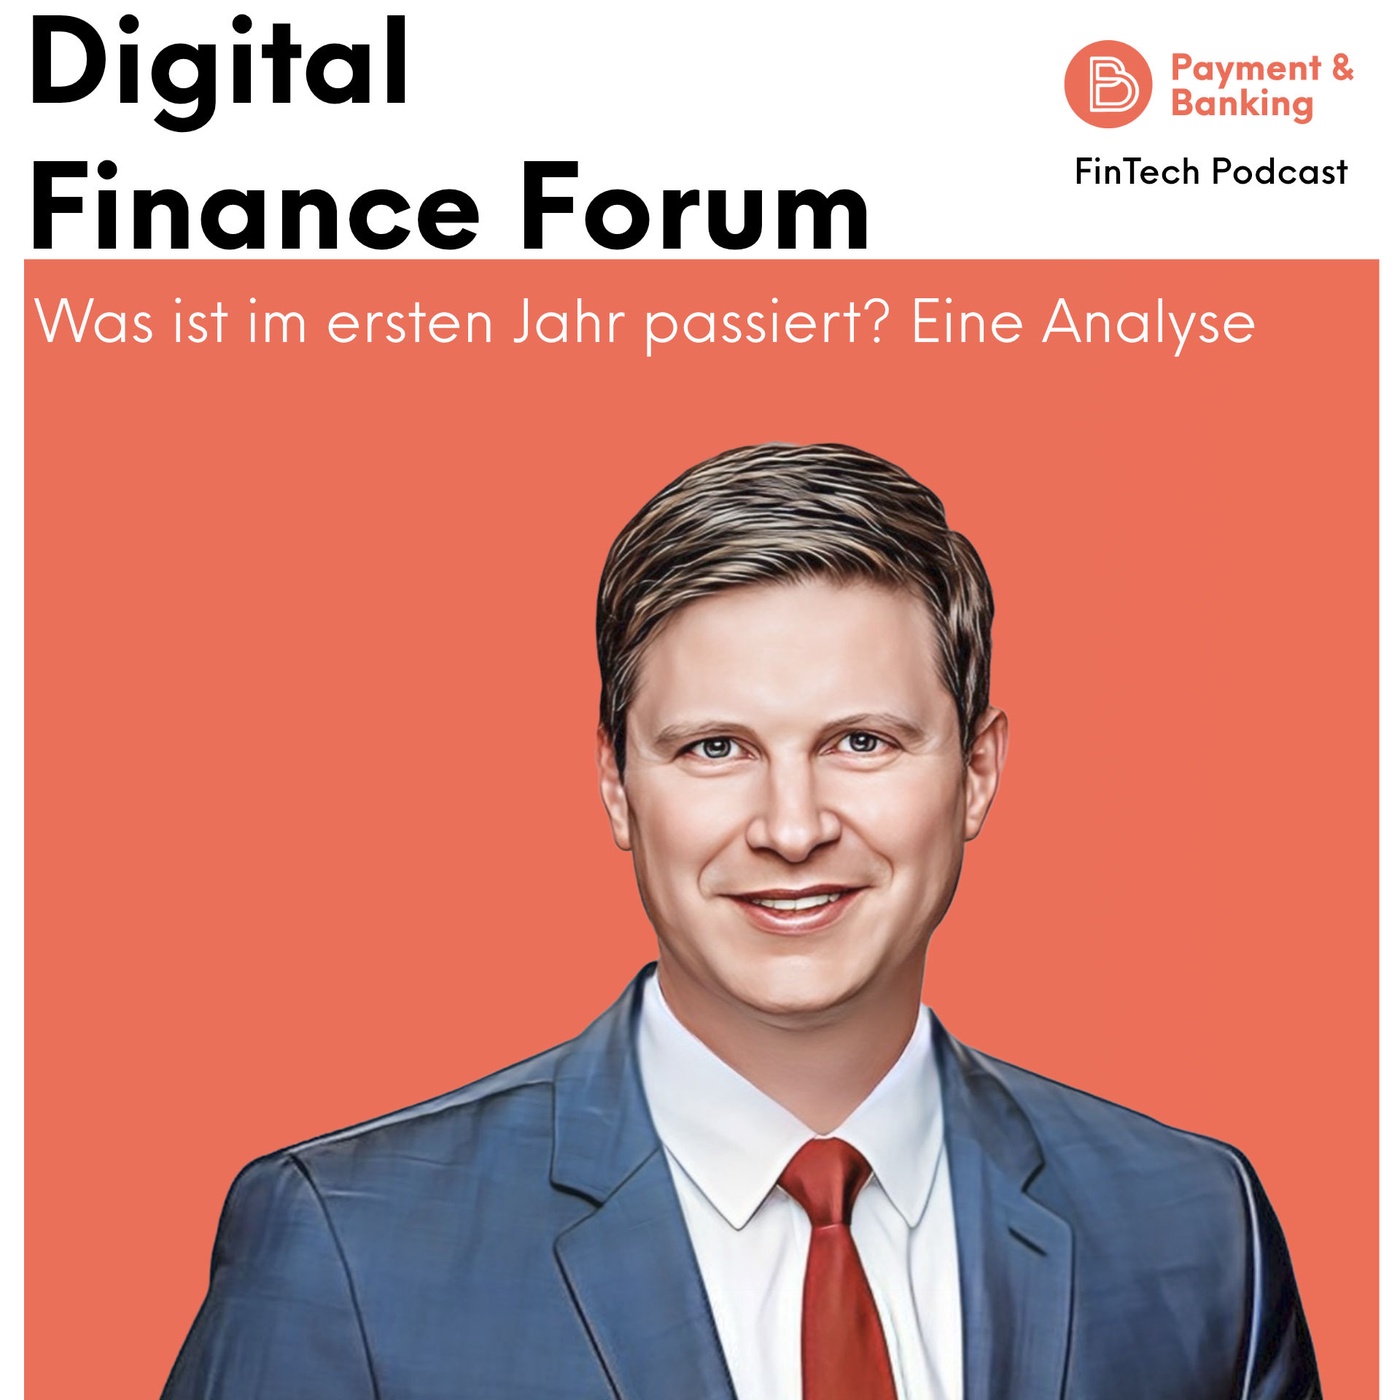 #430 - Digital Finance Forum: Was ist im ersten Jahr passiert?